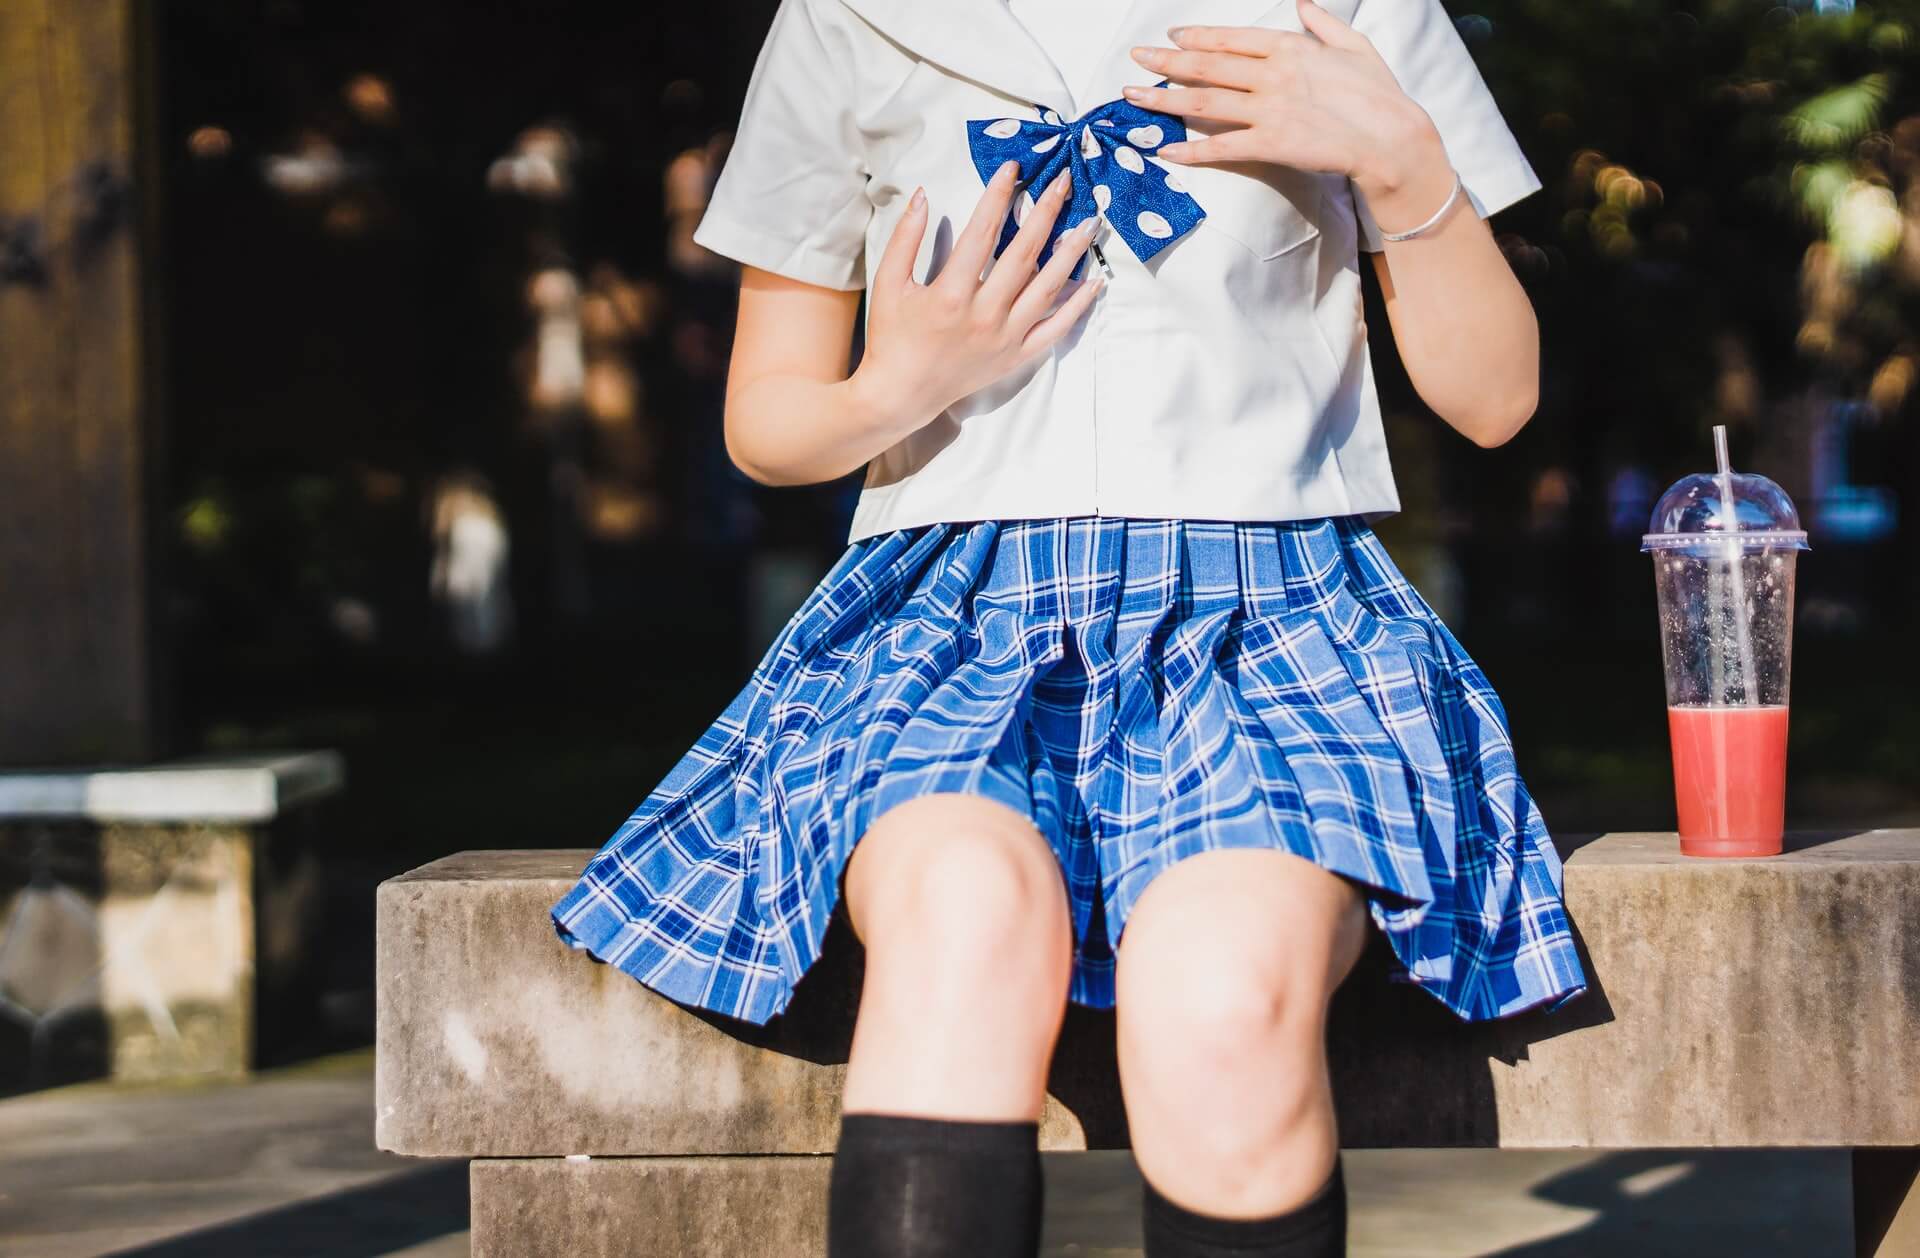 siedząca dziewczynka, która ma na sobie mundurek szkolny